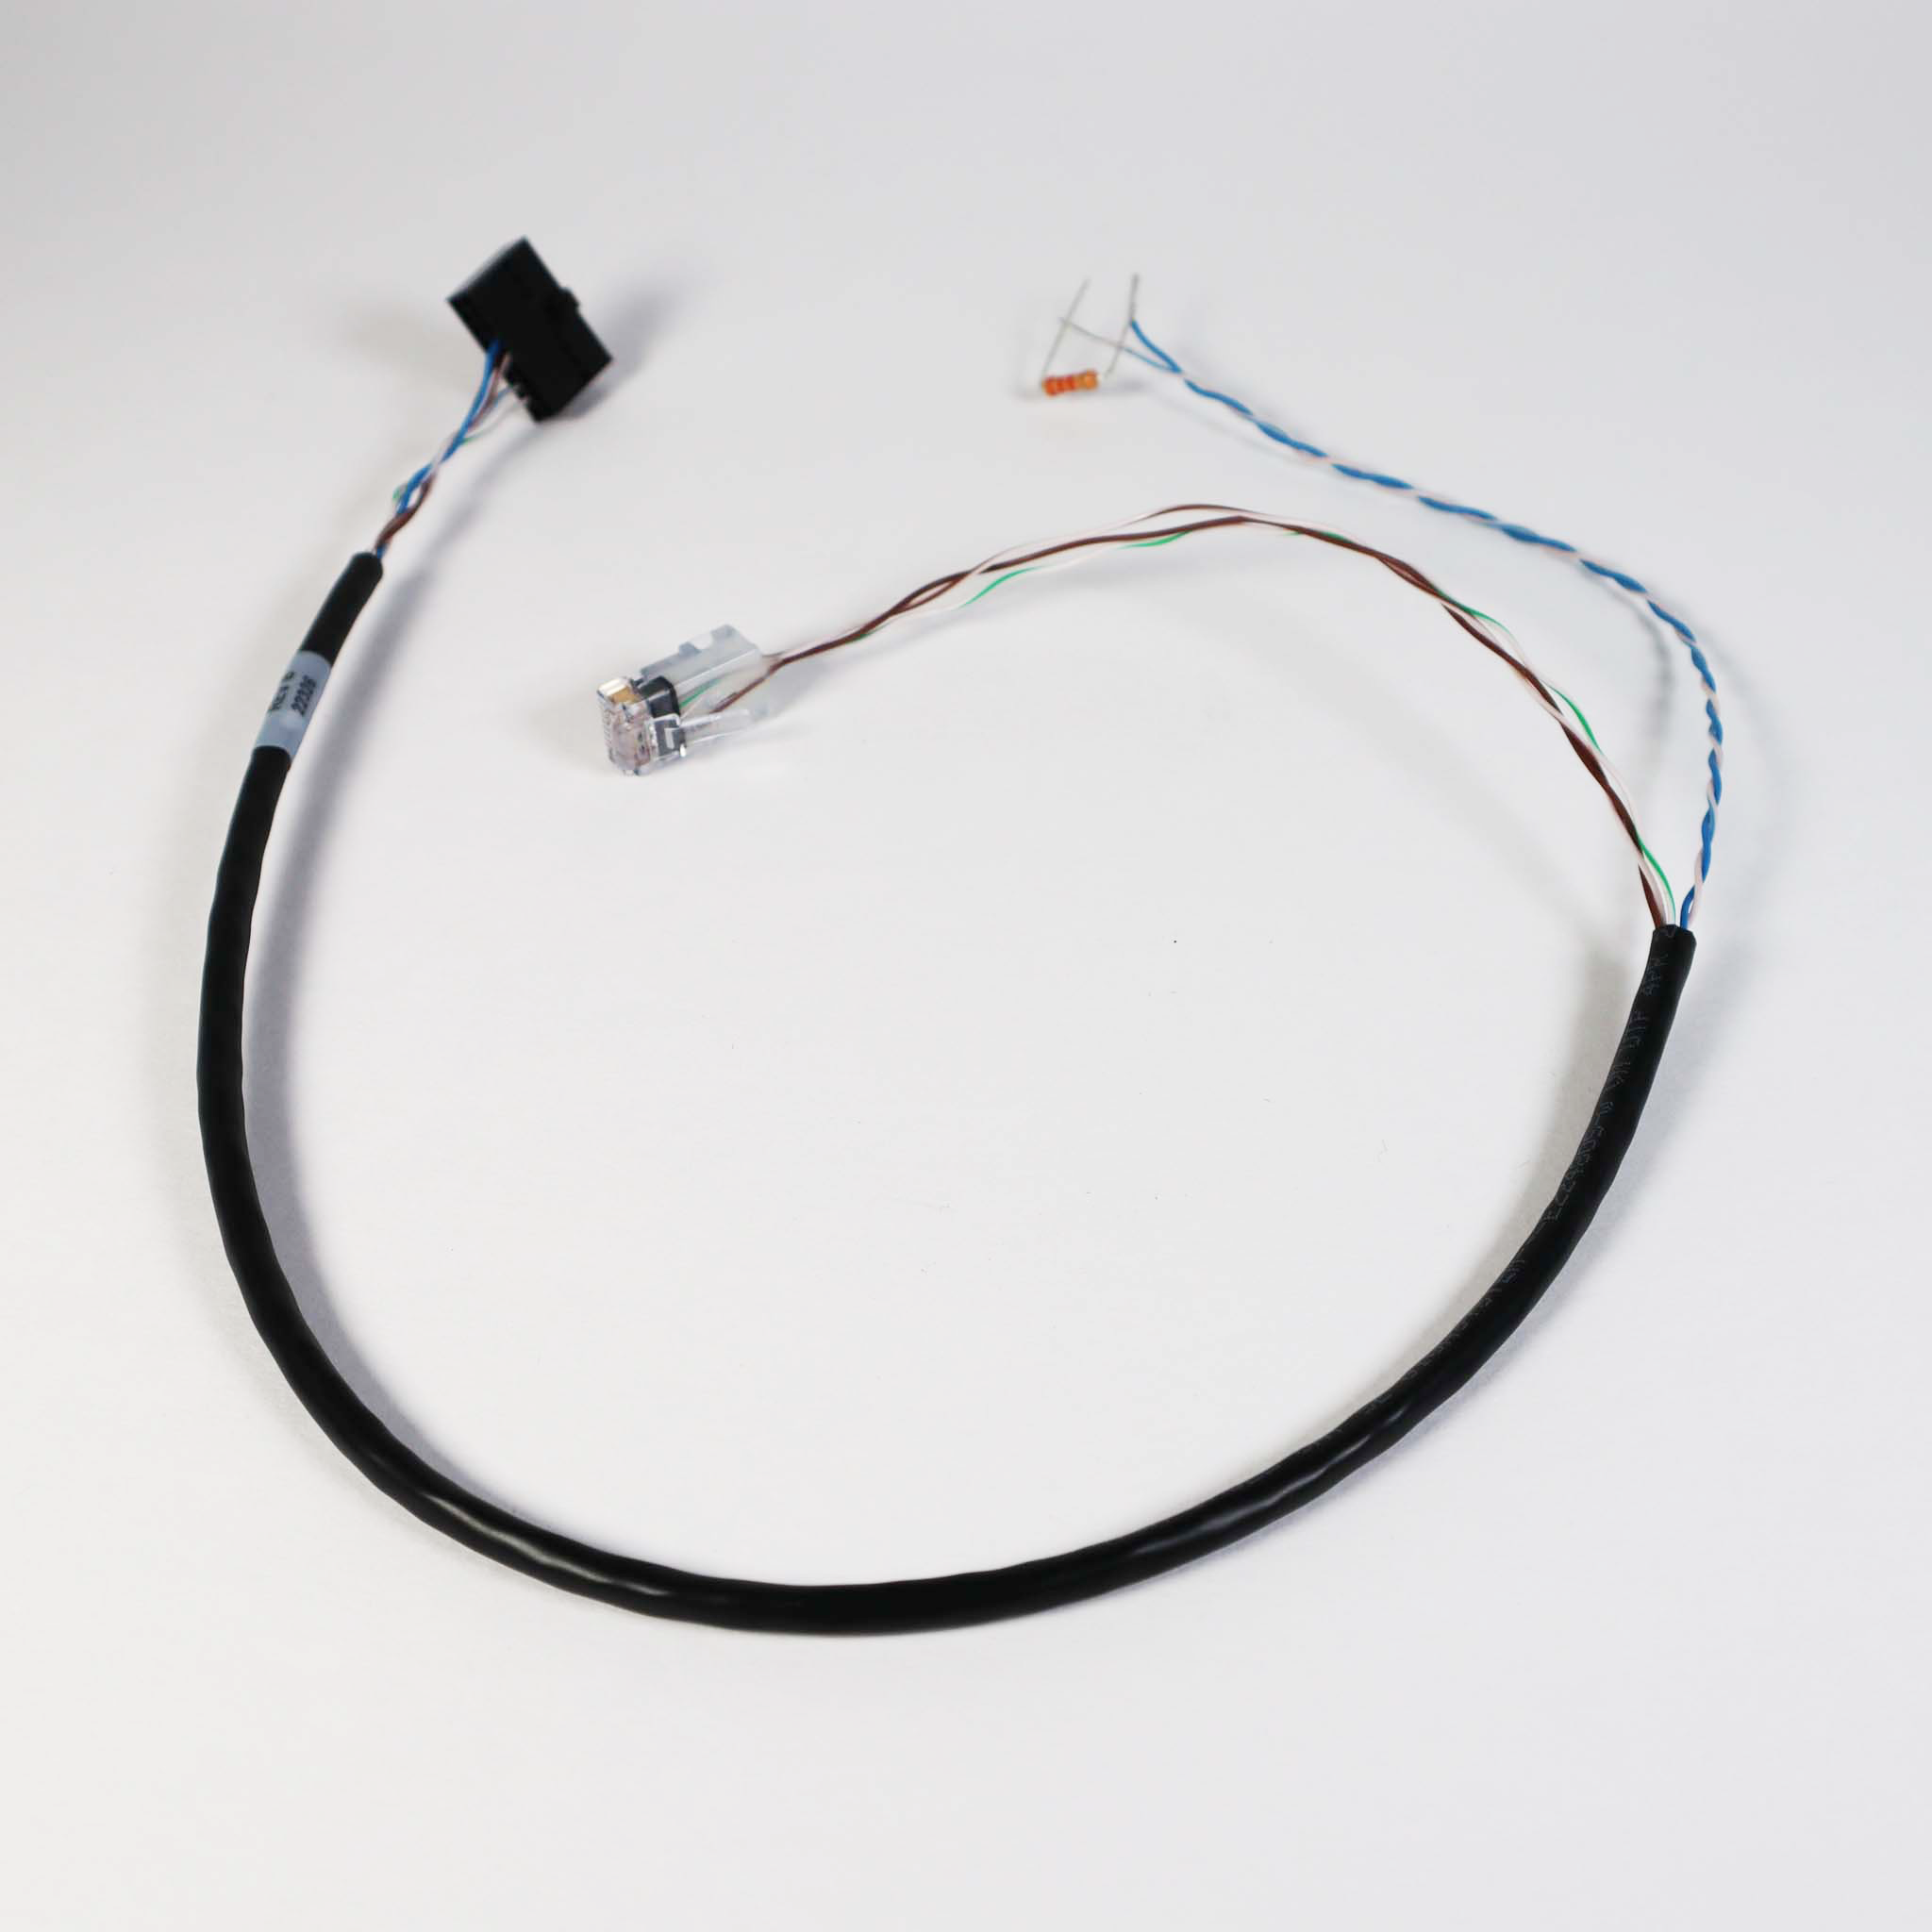 MX002413 Cable, Modbus, 22 inch